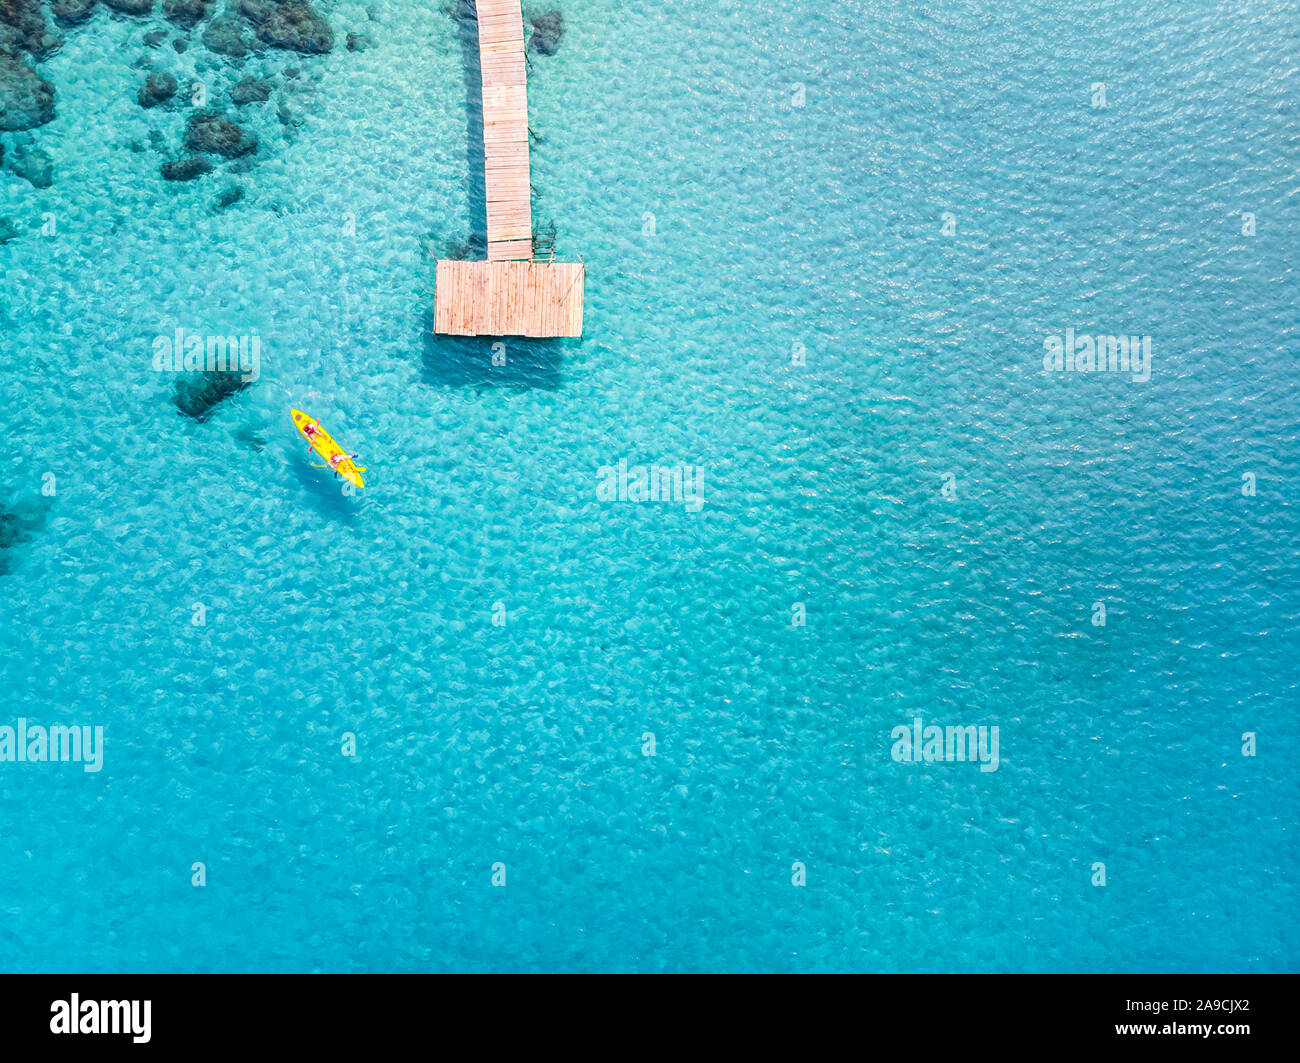 Visto desde la playa tropical de drone en el hermoso destino de vacaciones vacaciones con agua de mar turquesa transparente, el muelle y el pueblo en kayak. De arriba a abajo un Foto de stock